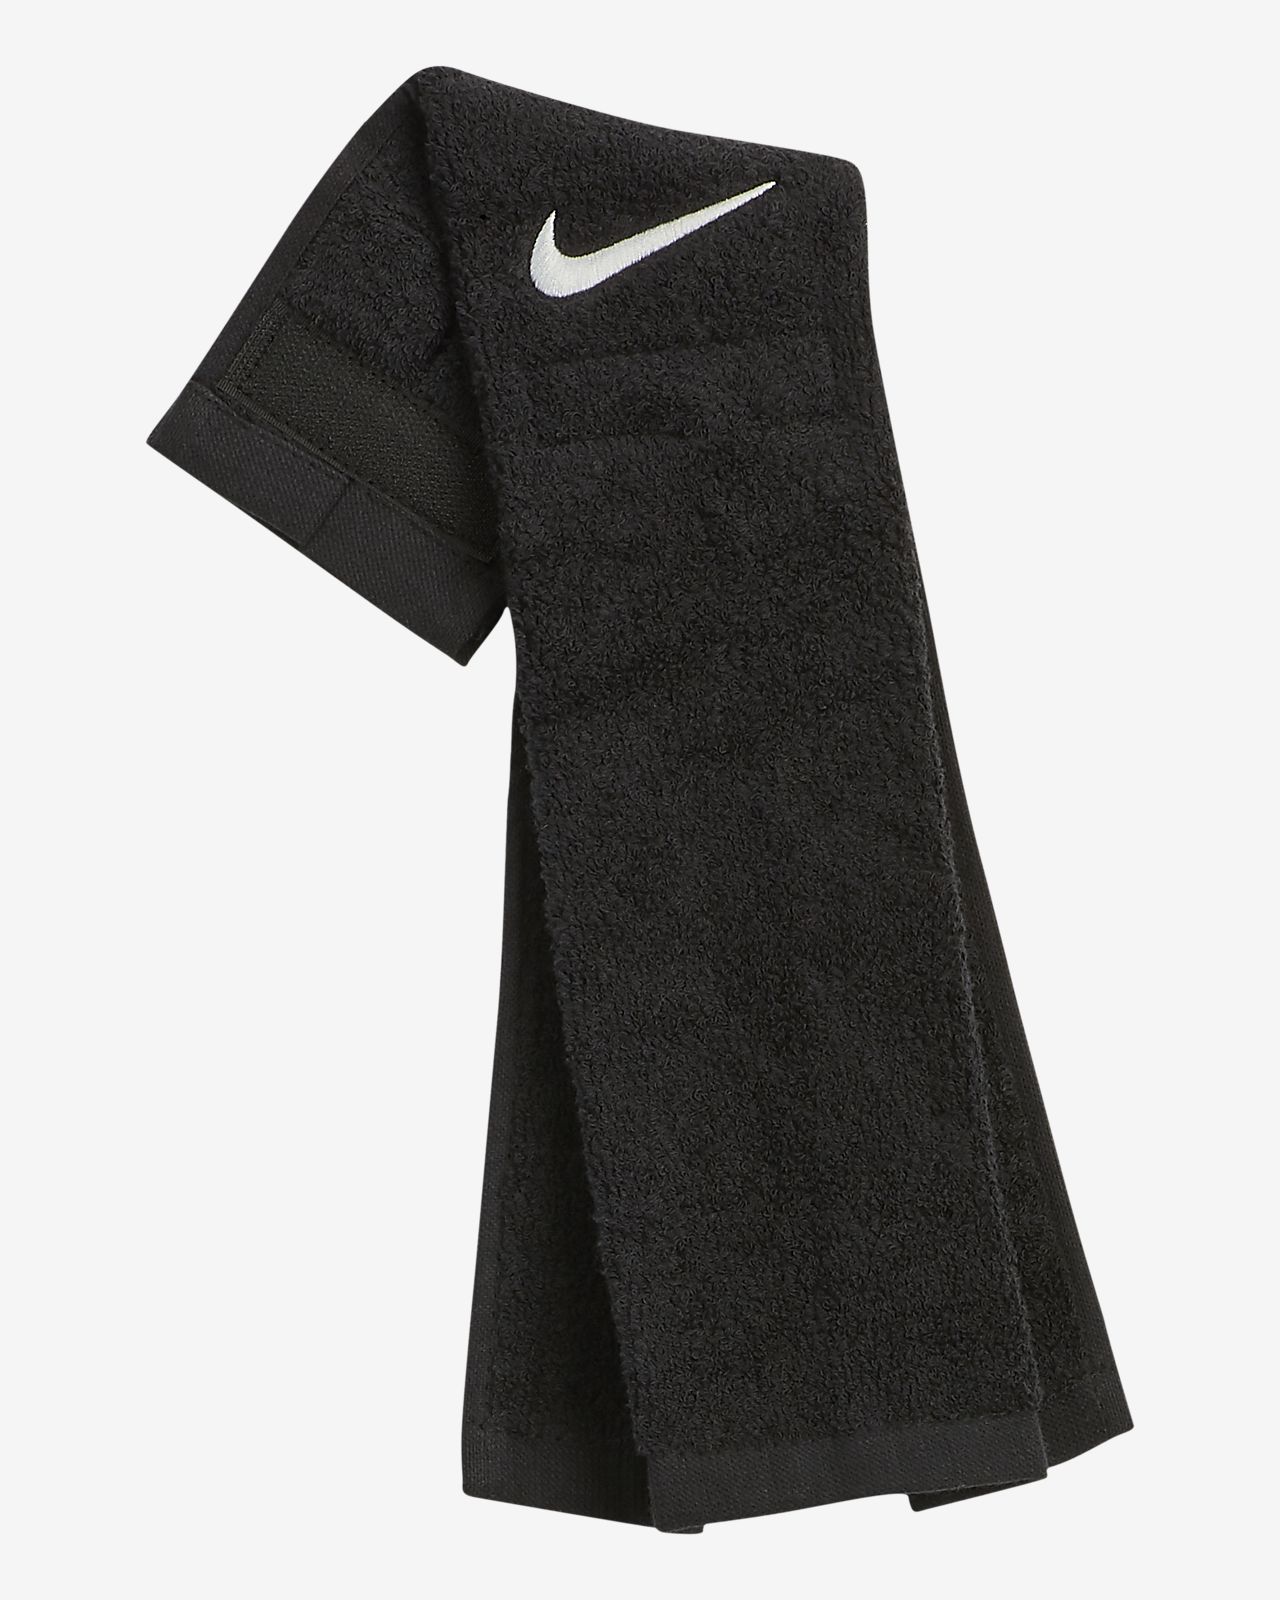 black nike football towel